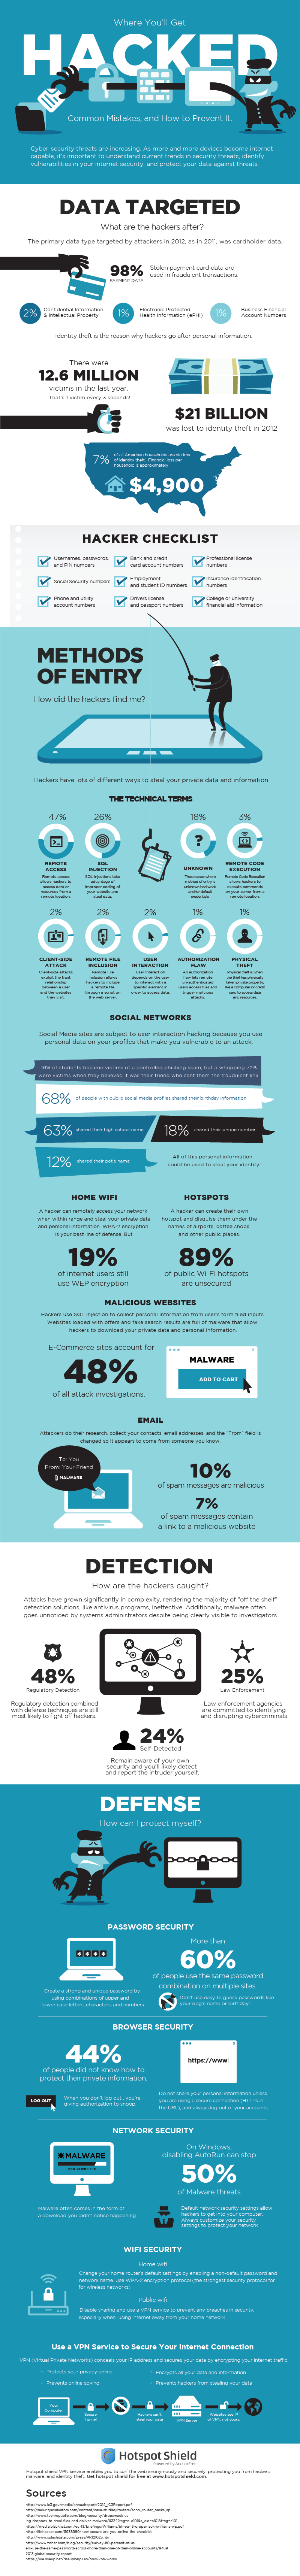 ¿Cómo protegerse de los hackers? #Infografía #Internet #Seguridad